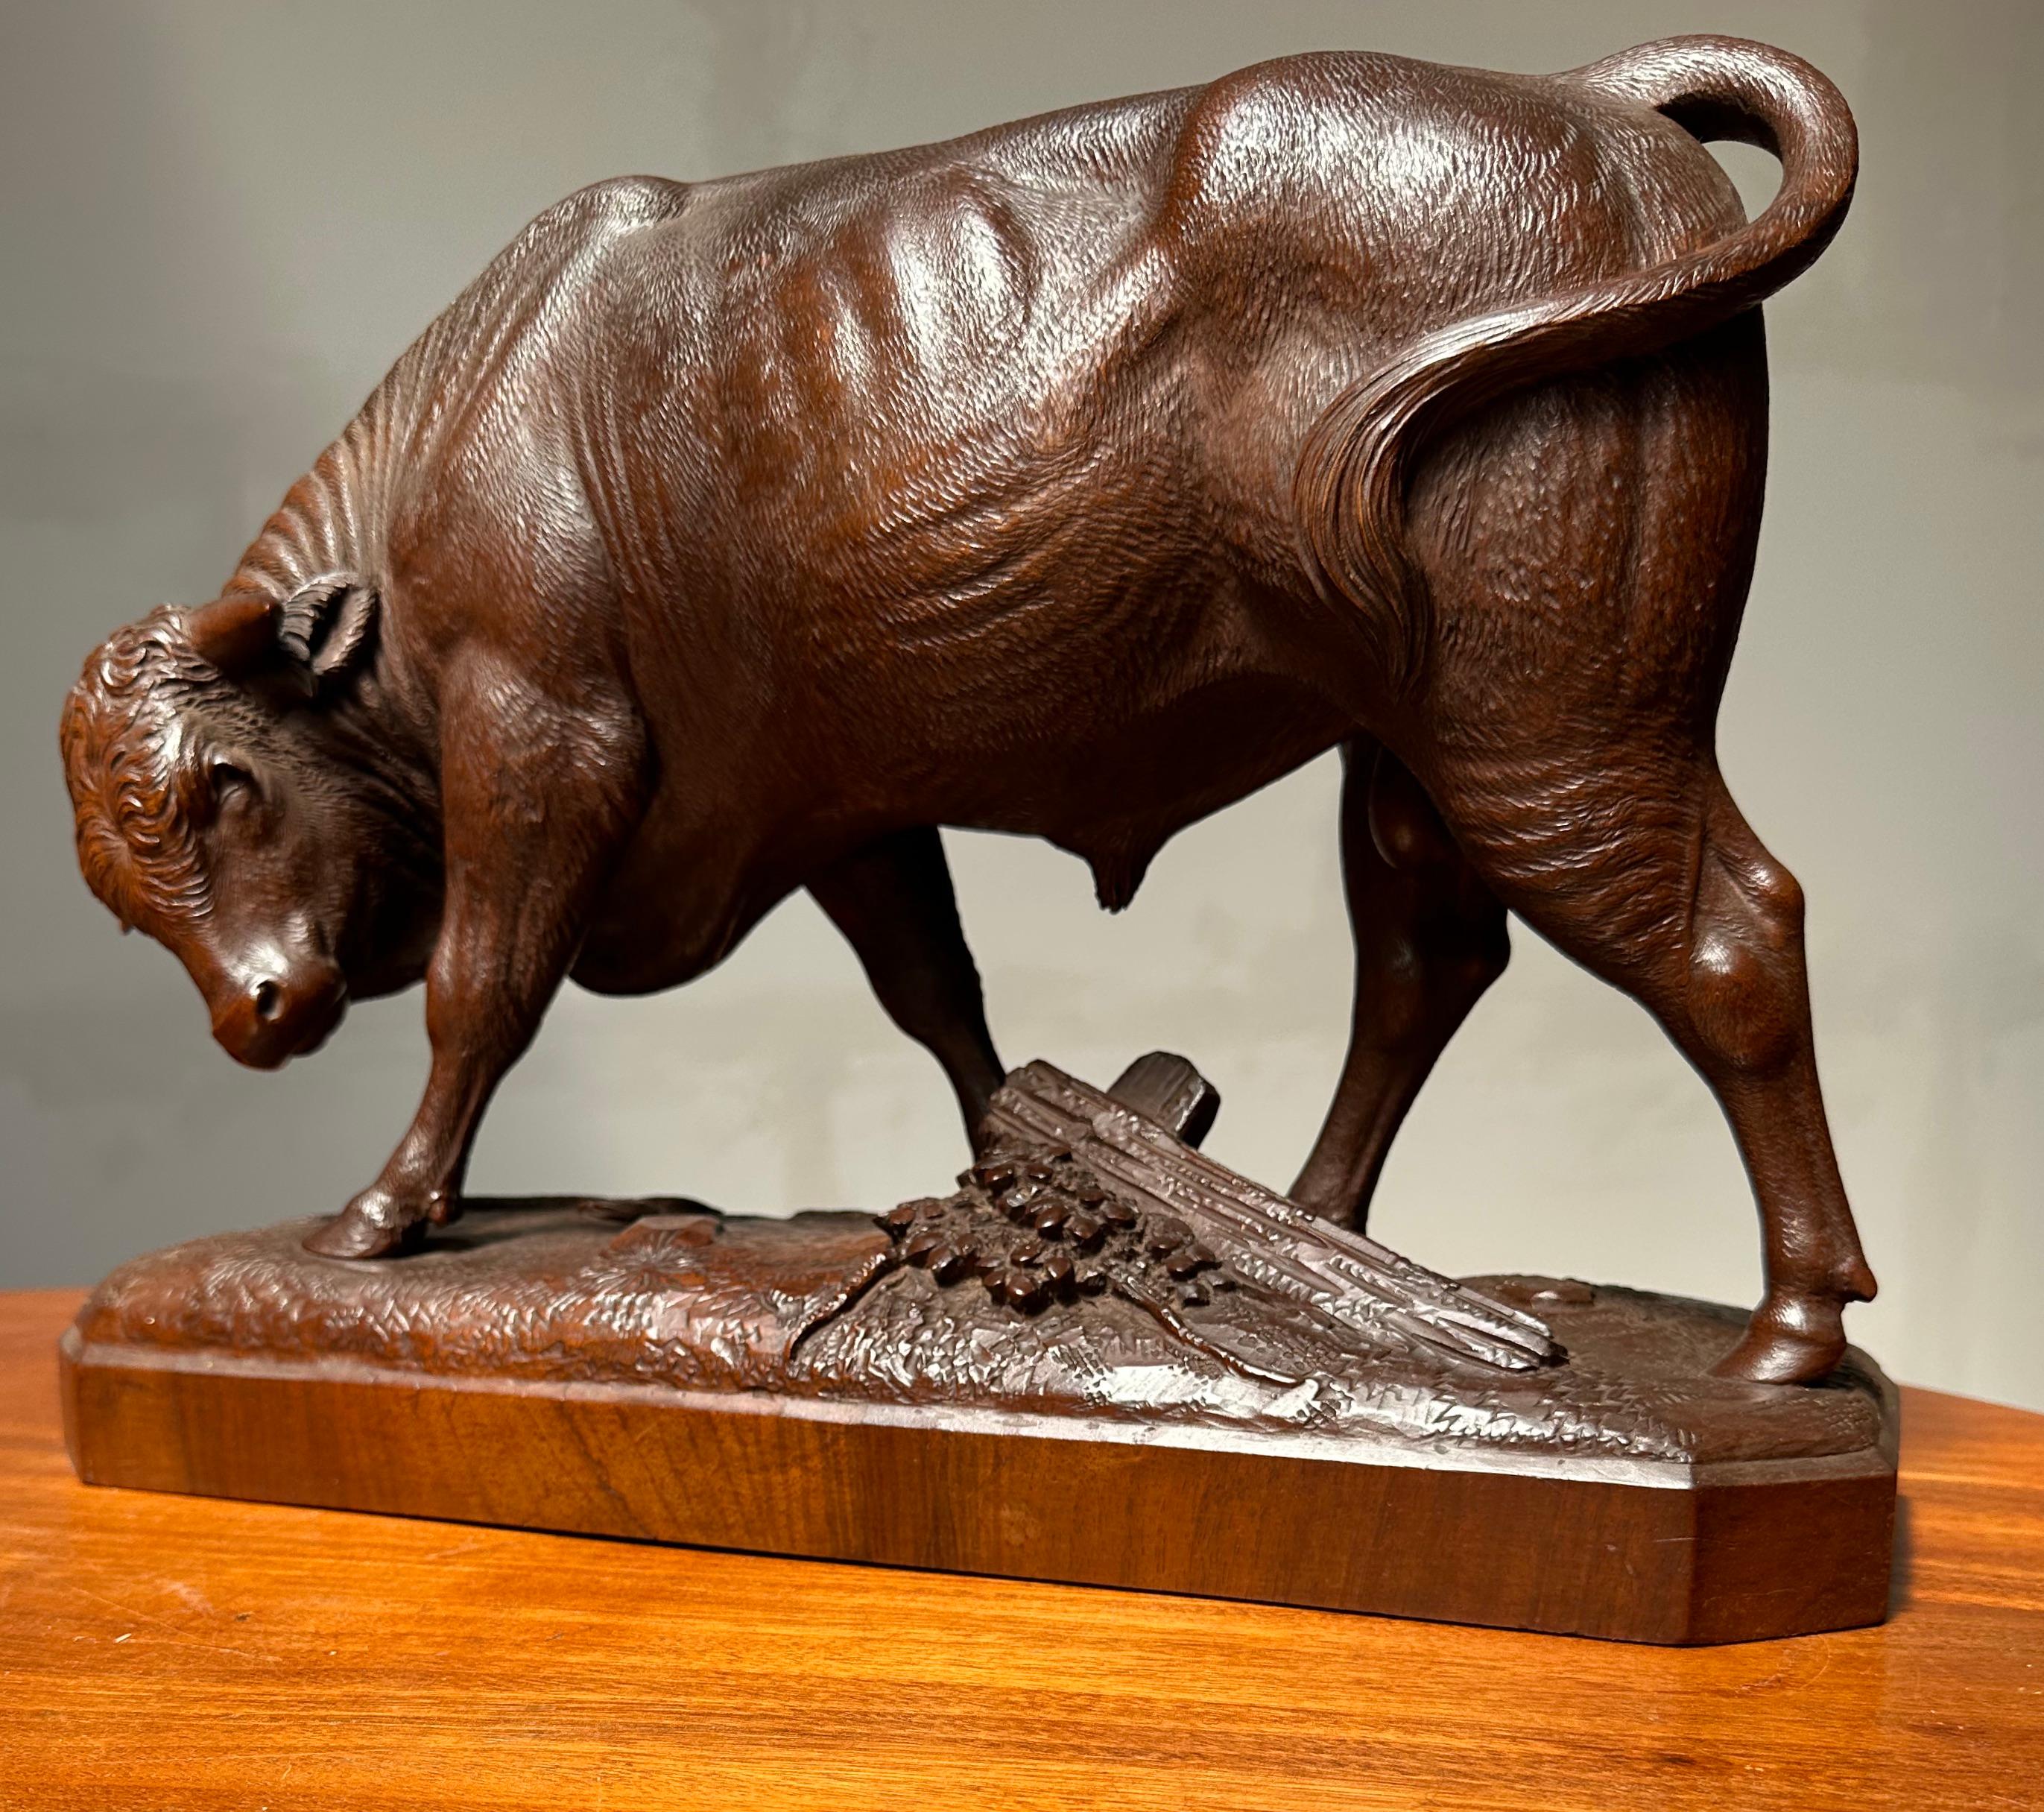 Museumsqualität und -zustand, handgeschnitzte Viehskulptur.

Dieser wunderbare Stier ist für die Sammler der seltensten und hochwertigsten Schwarzwaldskulpturen. Unglaublich detailliert, handgeschnitzt und groß kann diese Stier-Skulptur nur aus der